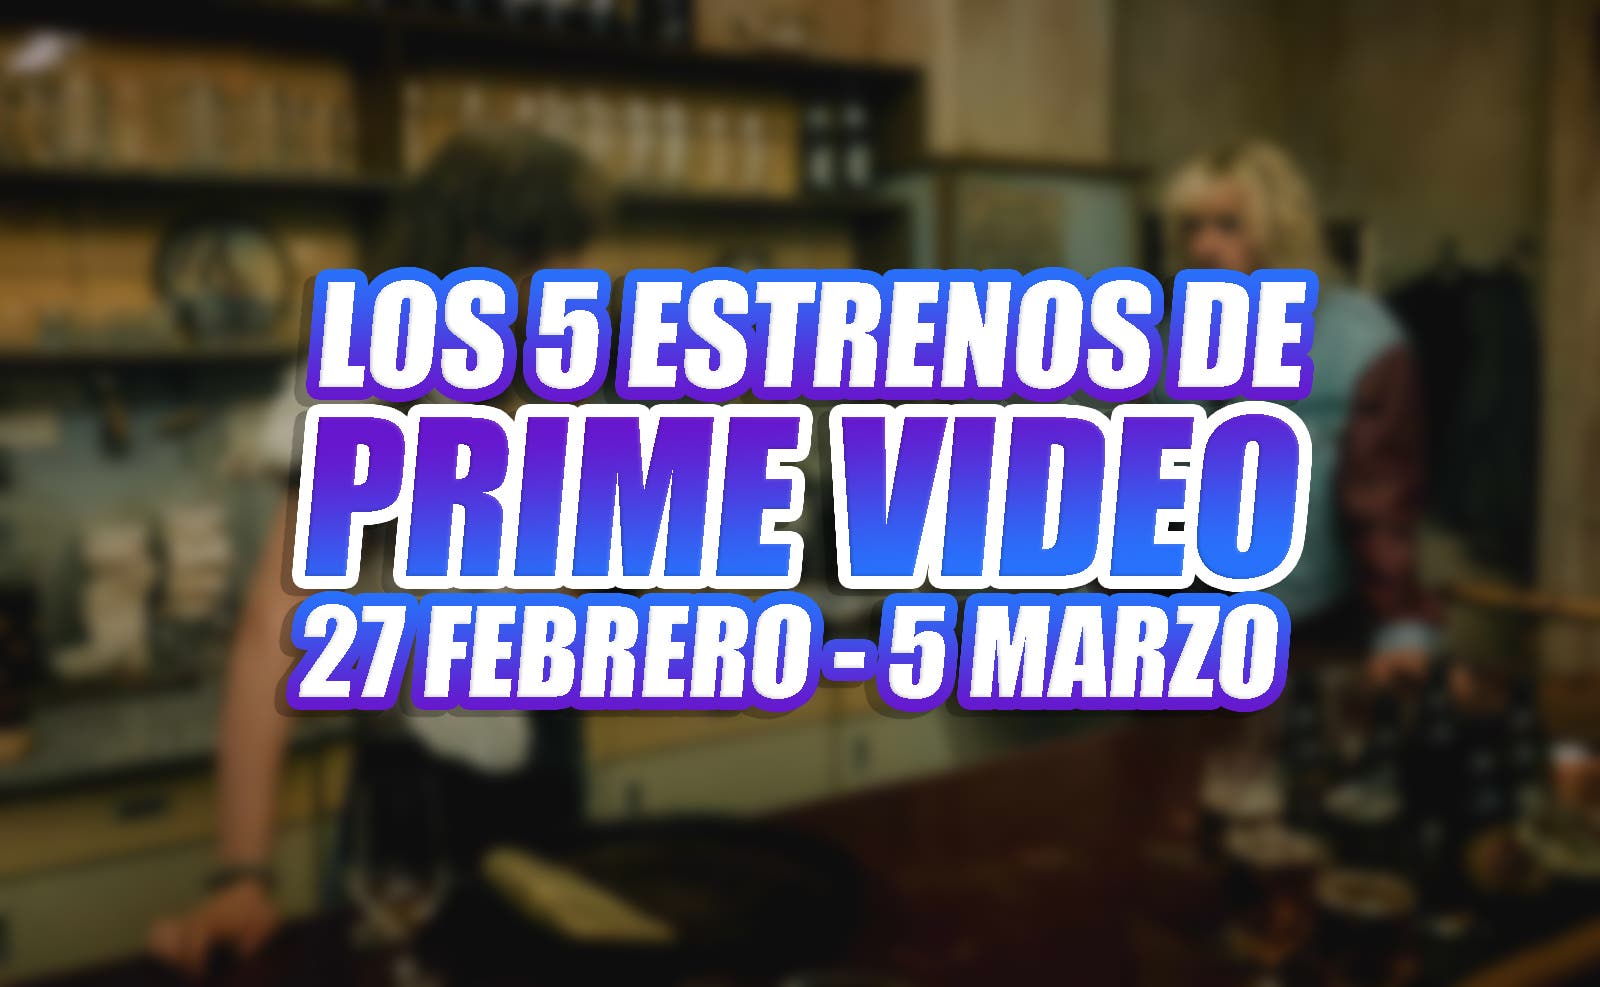 Prime Video y sus 5 estrenos durante esta semana (27 febrero - 5 de marzo)